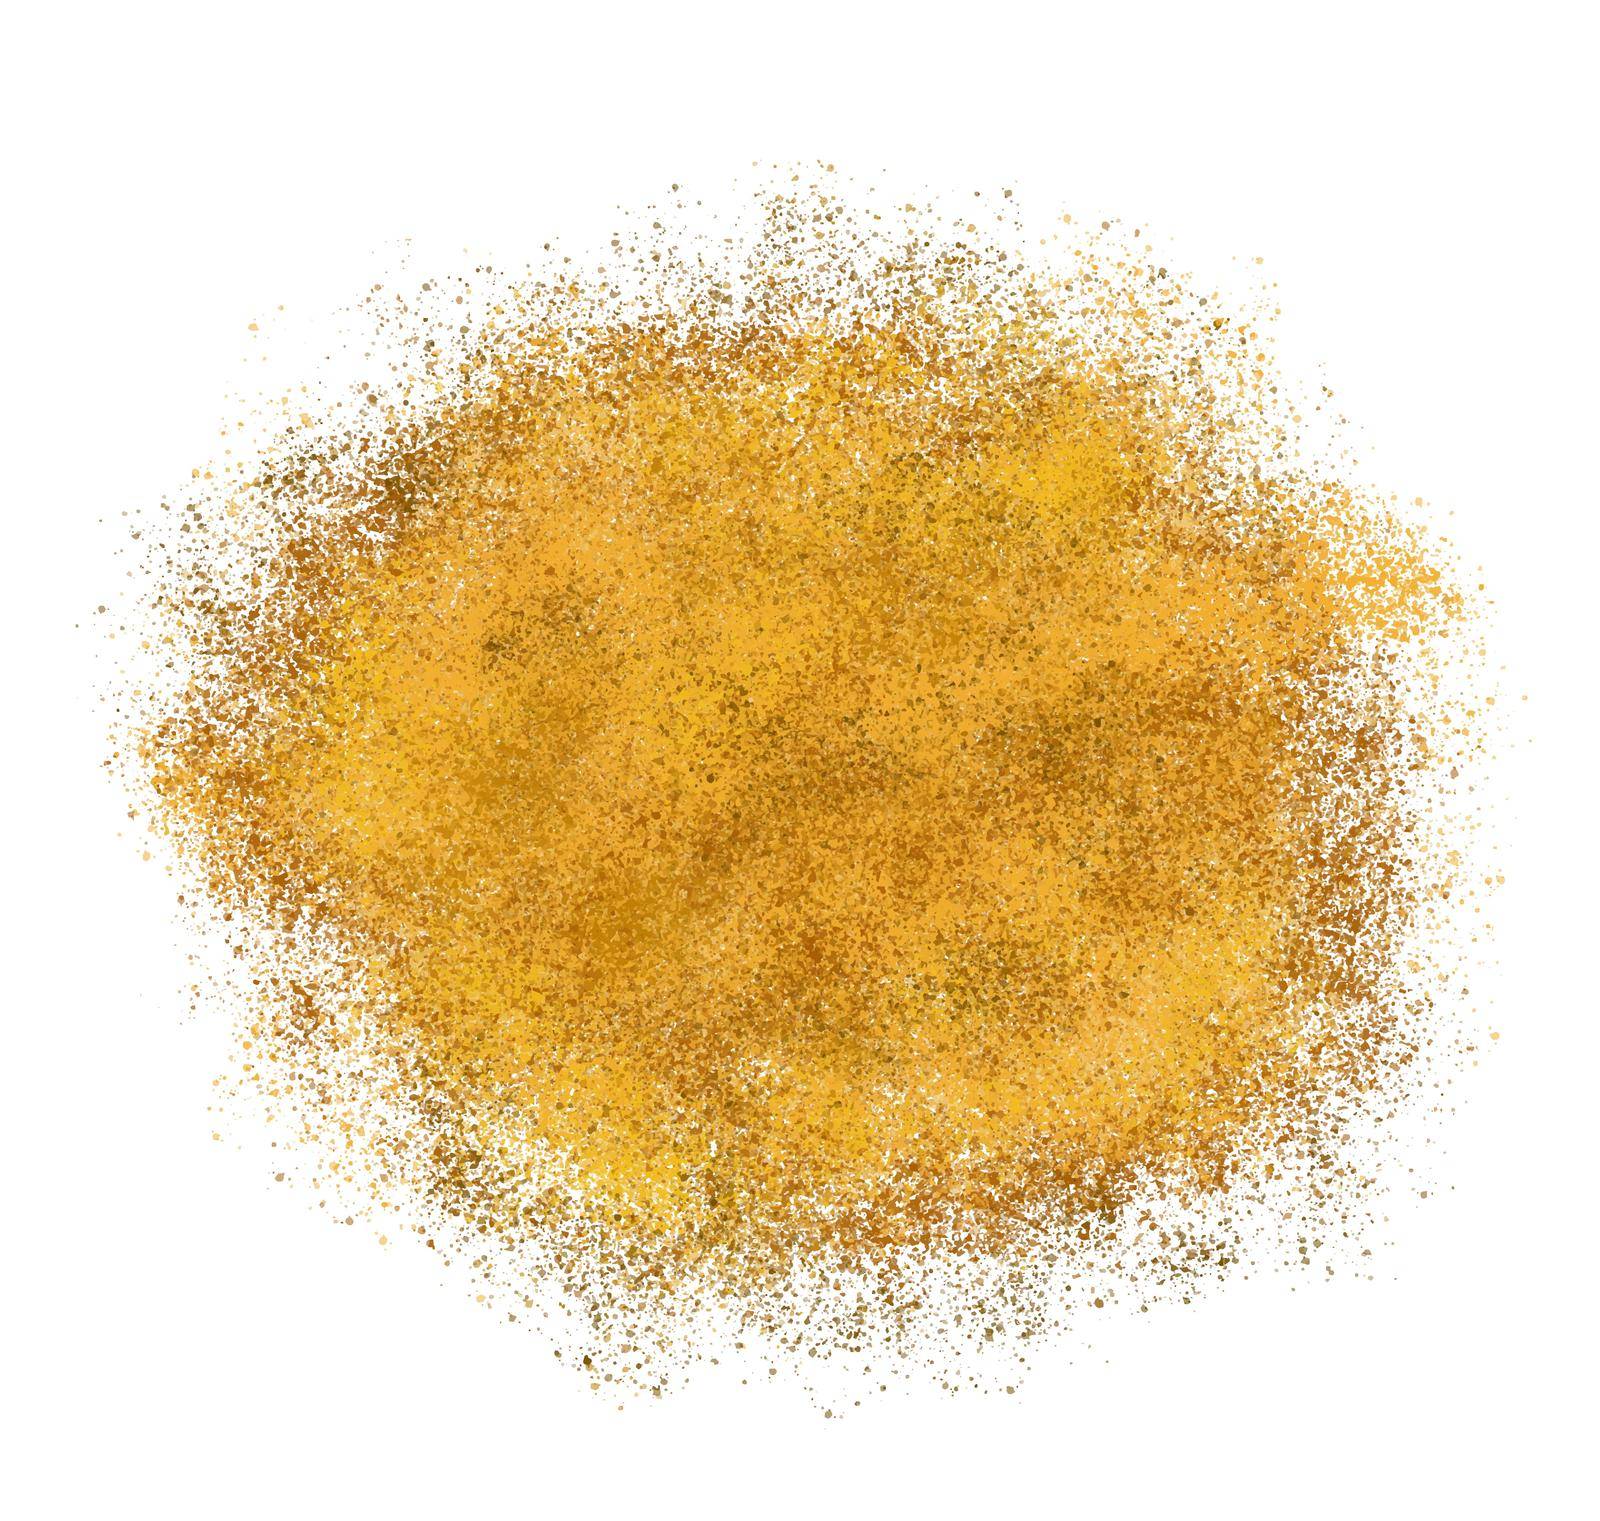 Golden Paint Splash on White Background. Vector Illustration